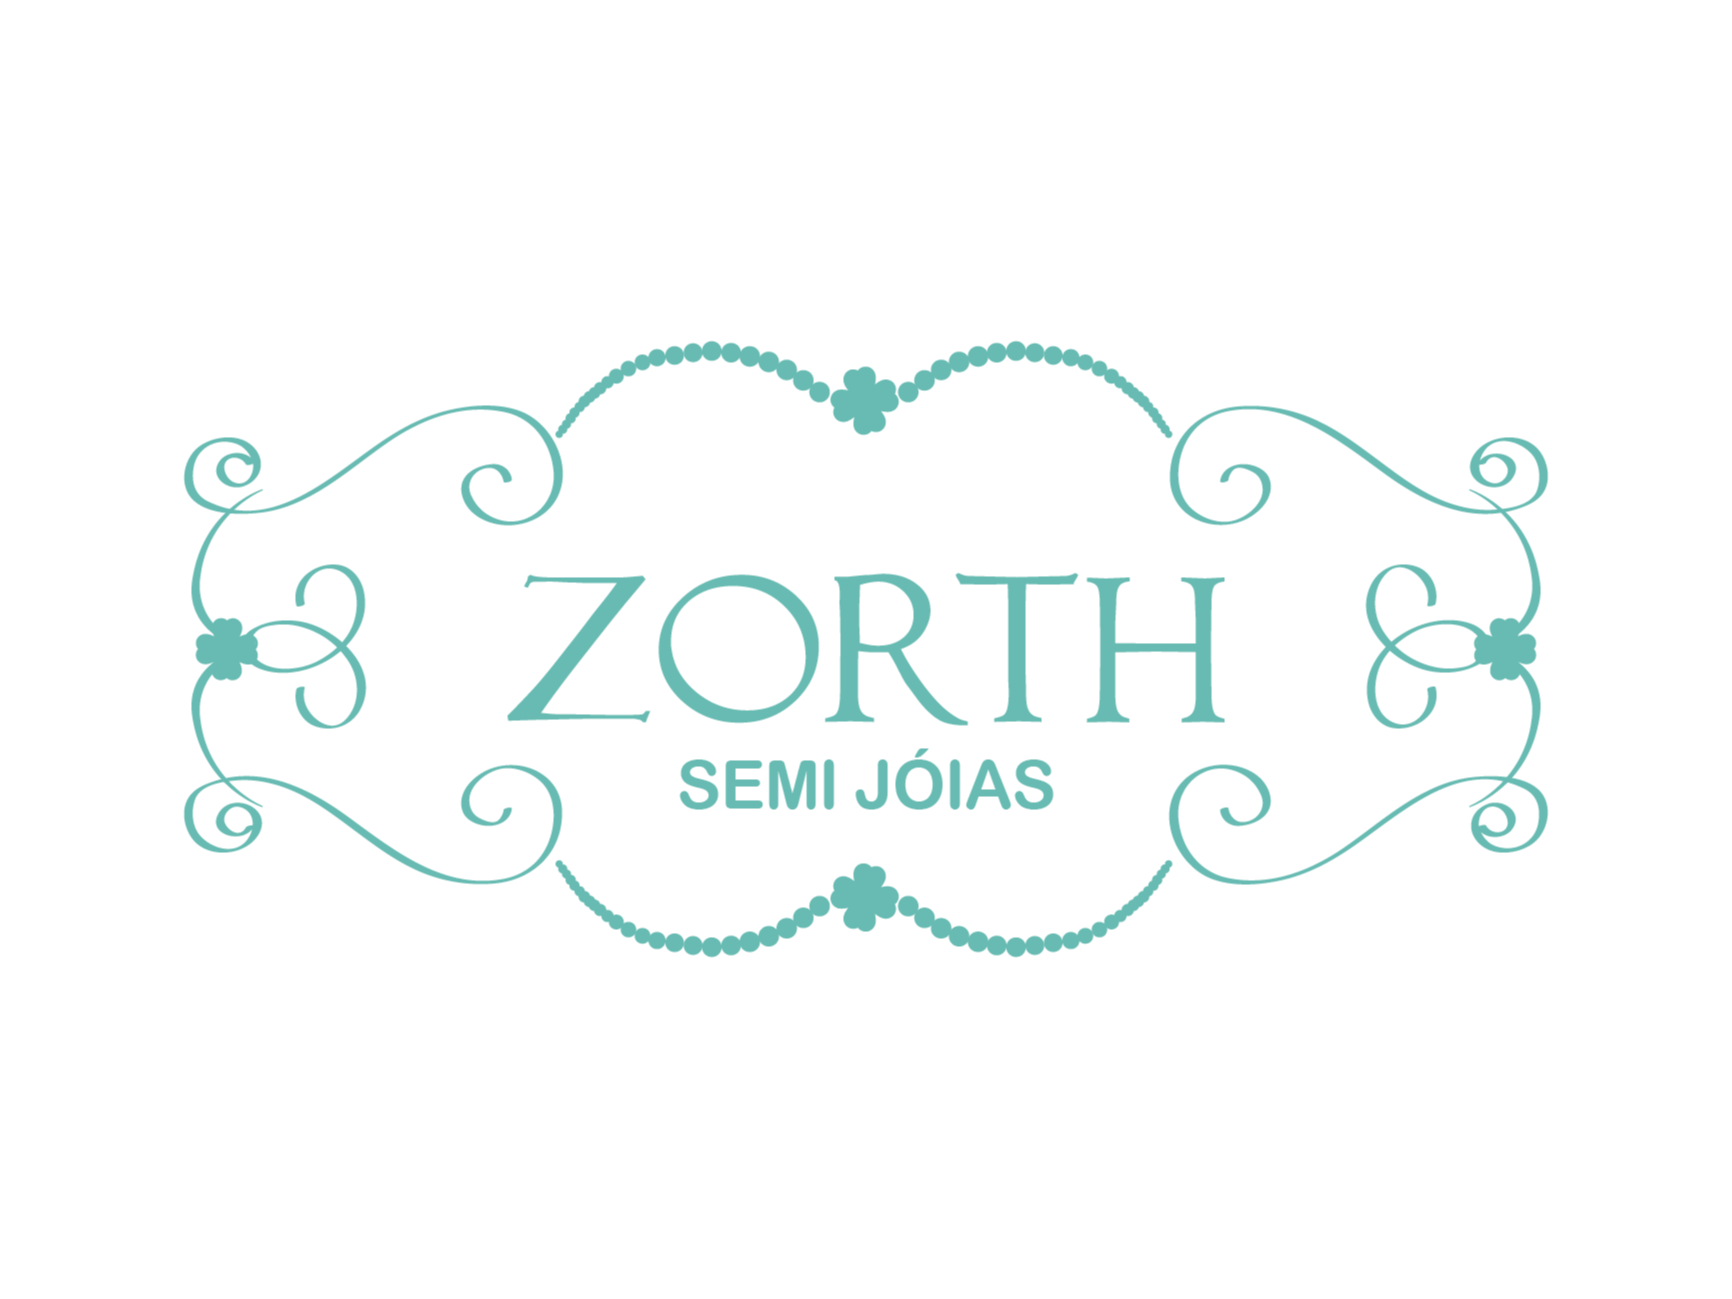 Zorth Semi Joias